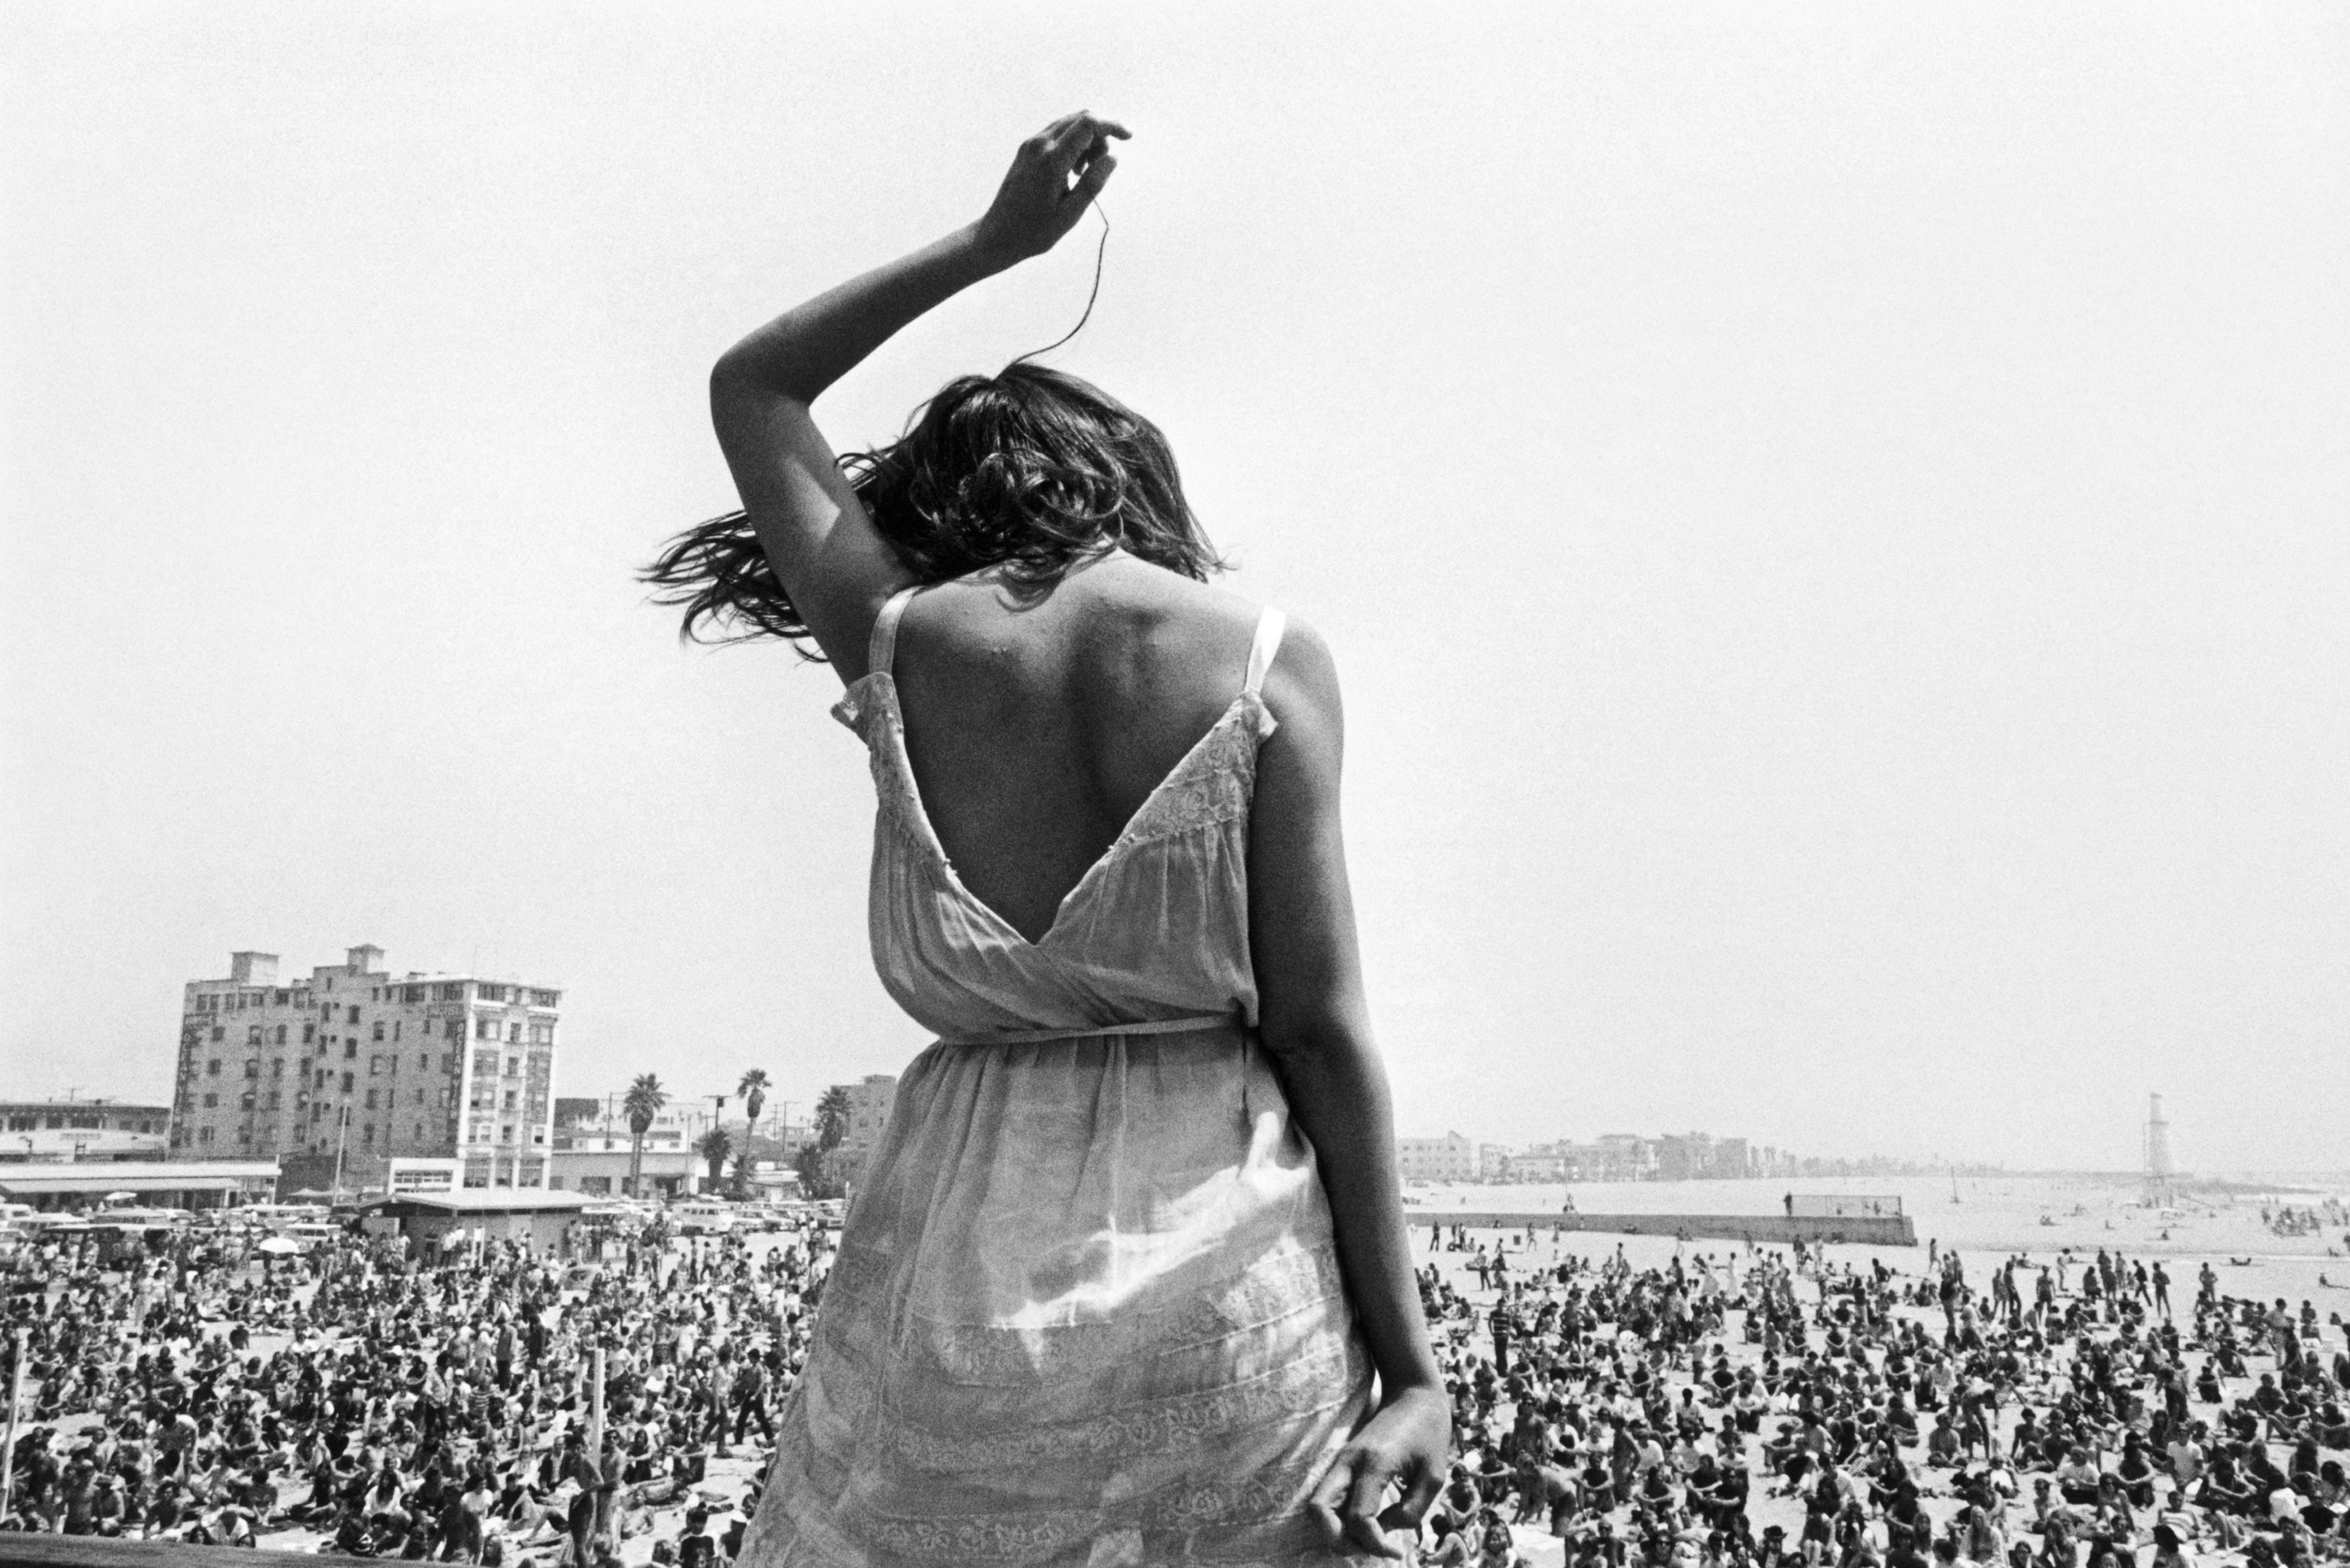 Рок-фестиваль Venice Beach, Калифорния, 1968. Фотограф Деннис Сток